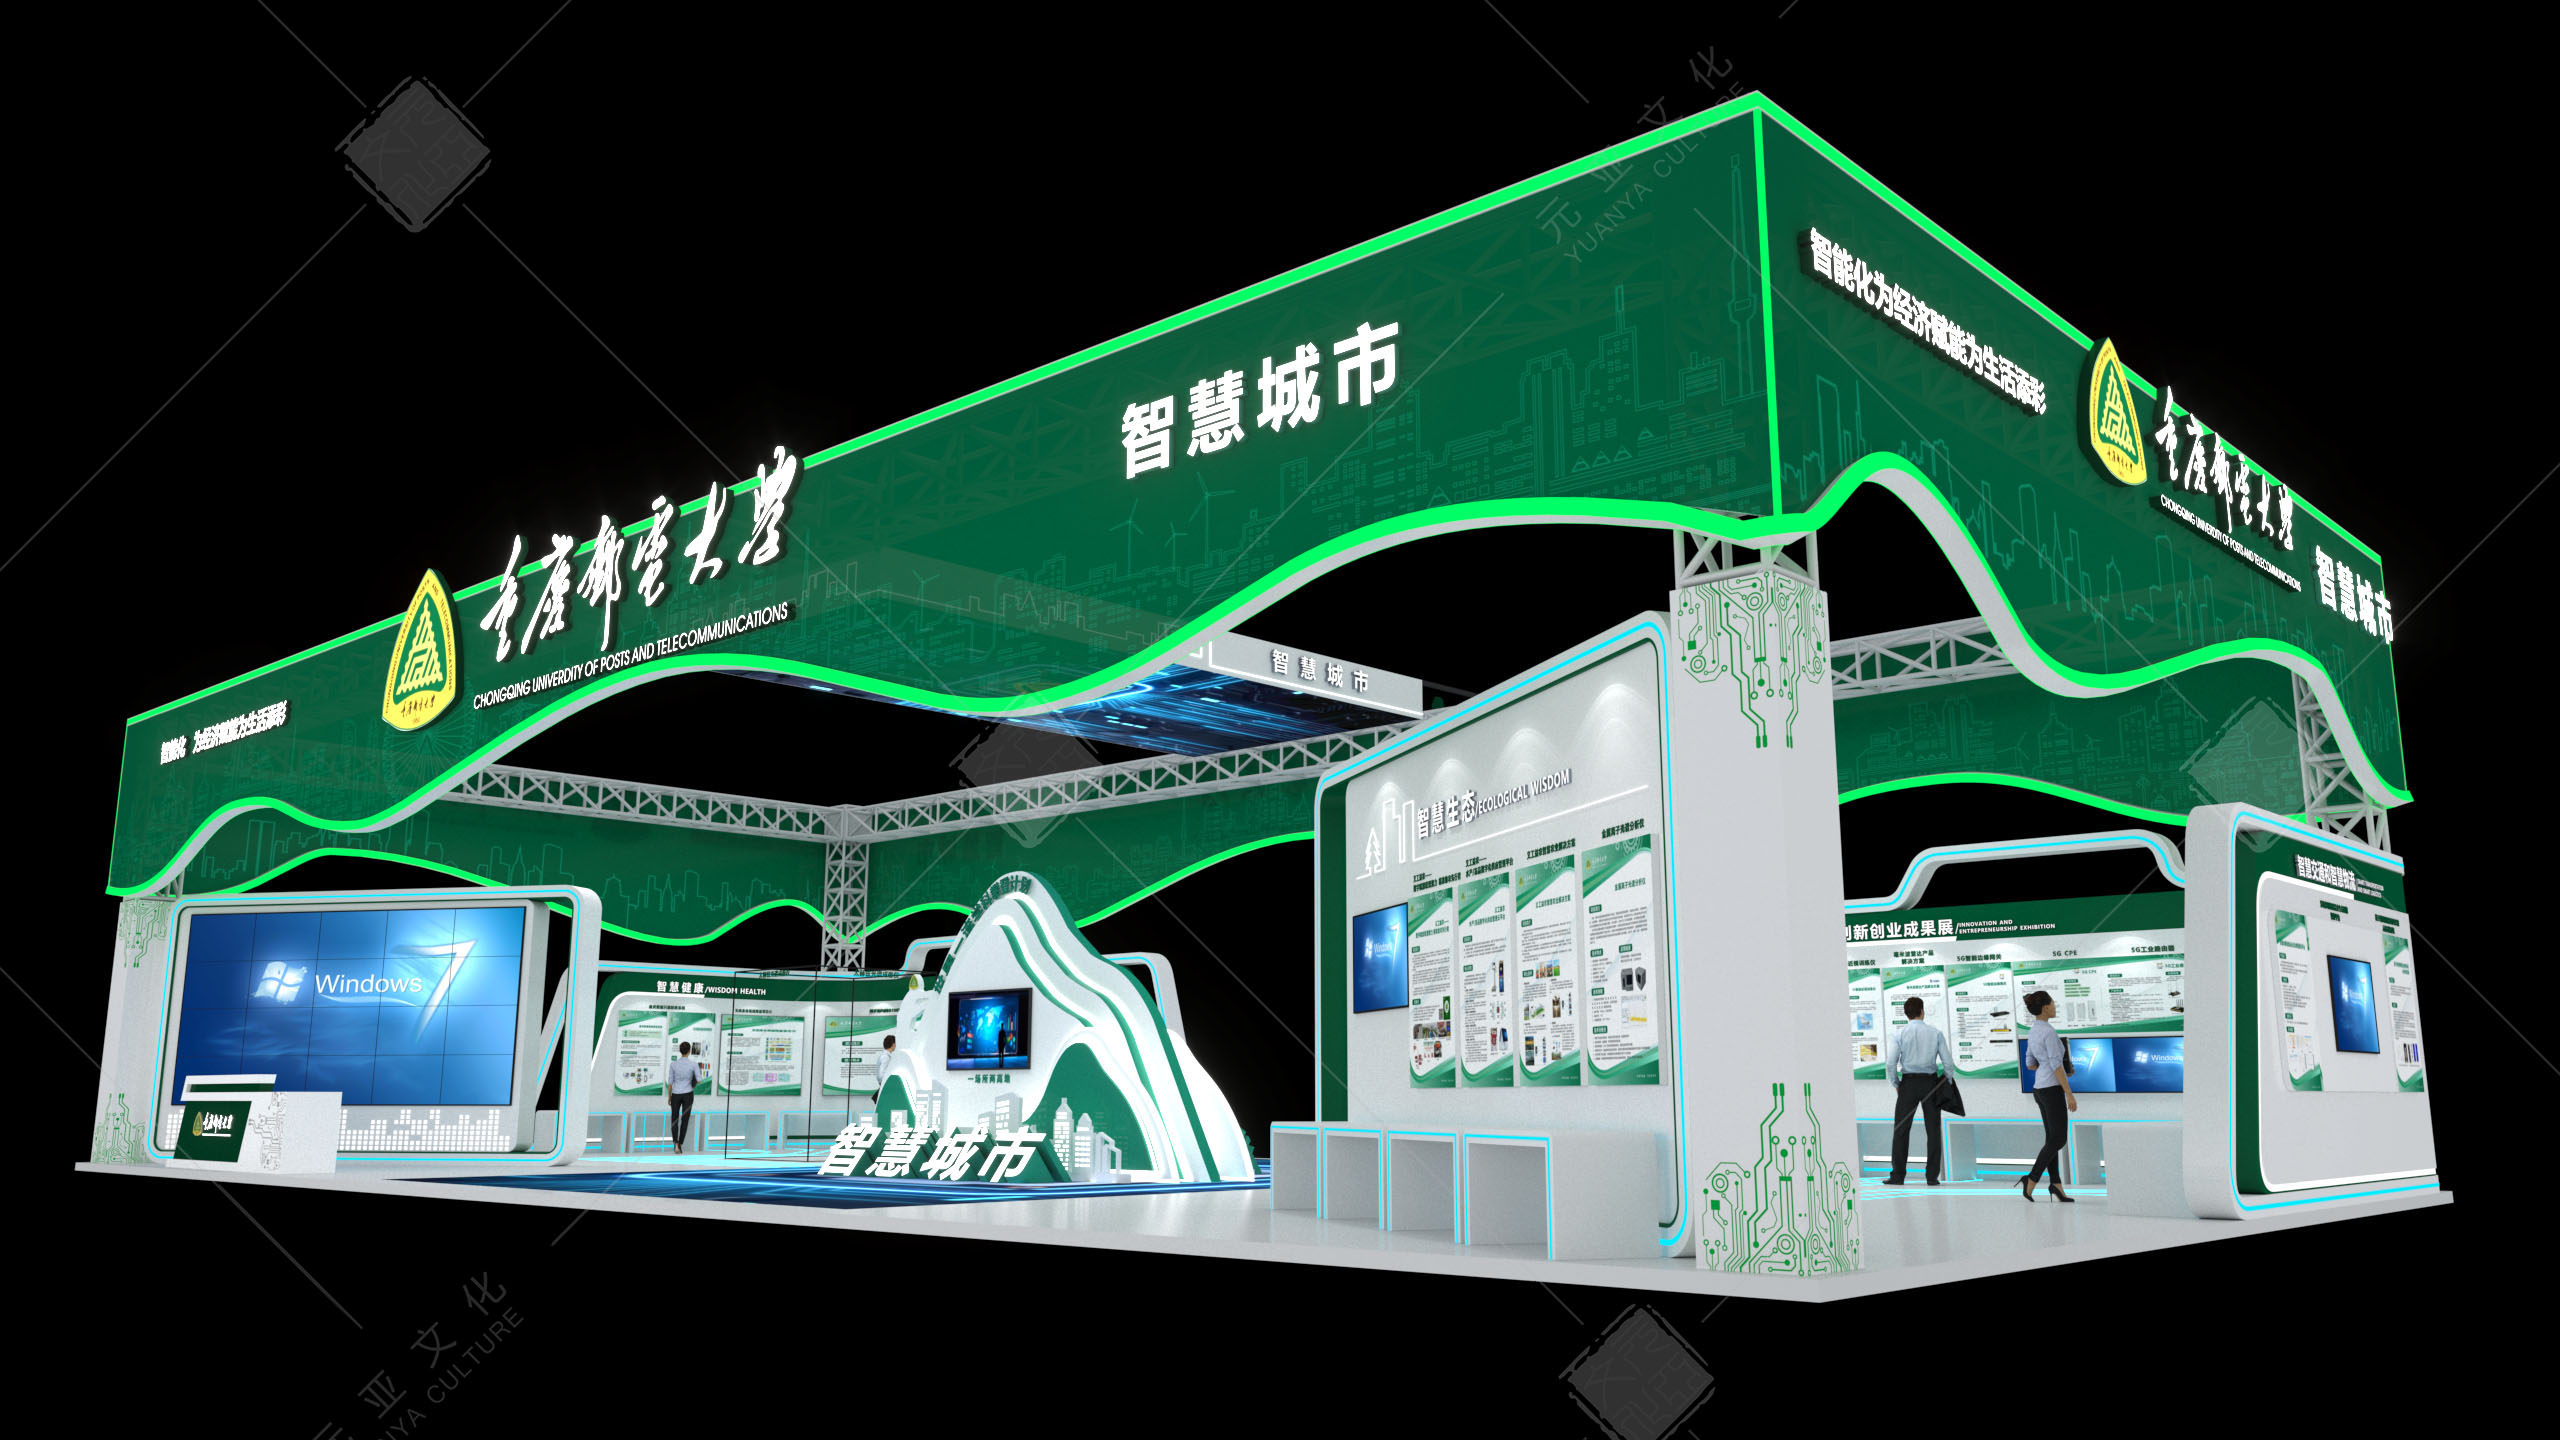 2020年 智博会重庆邮电大学展厅